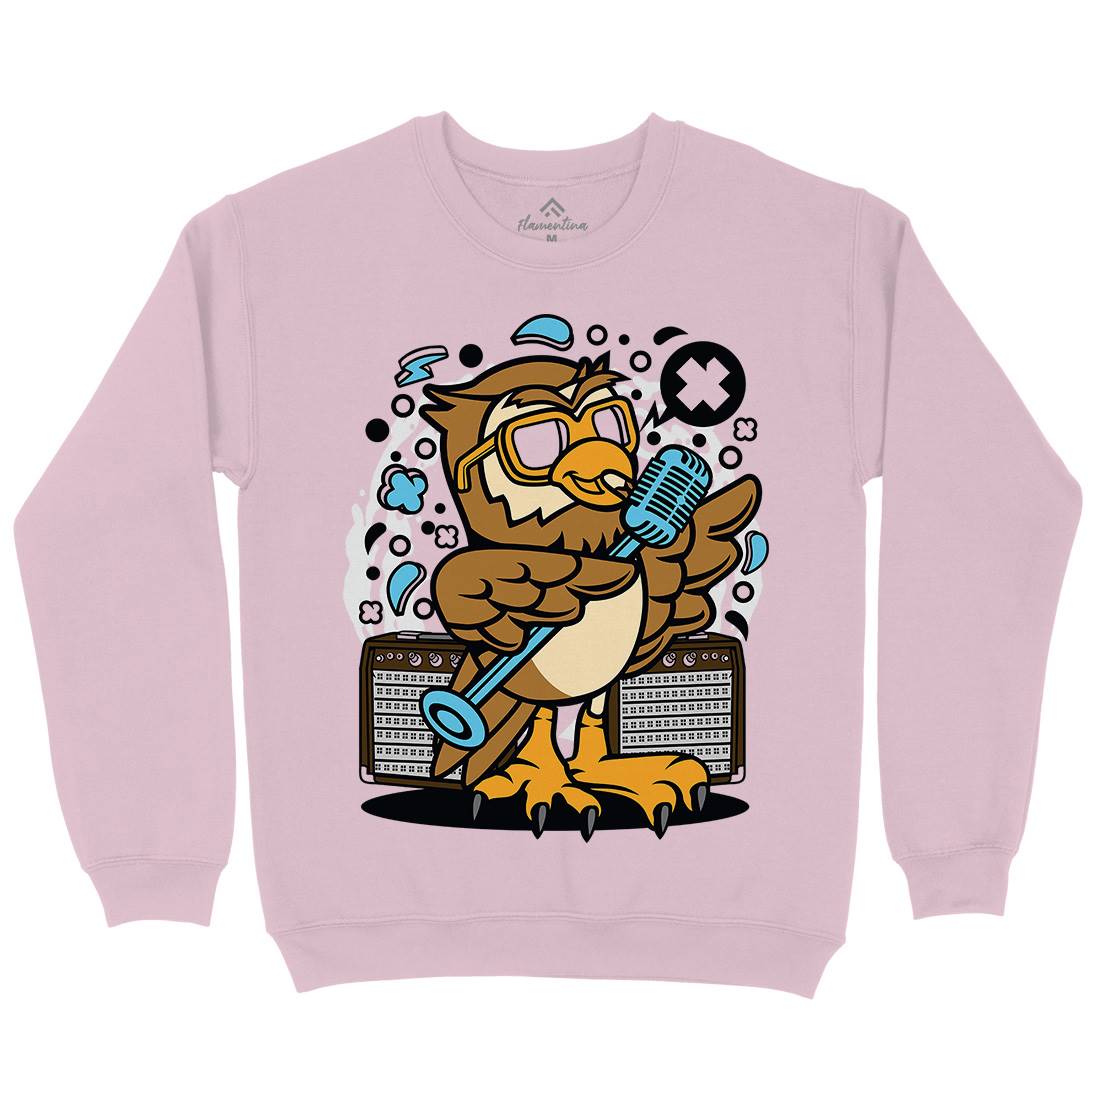 Owl Singer Kids Crew Neck Sweatshirt Music C600